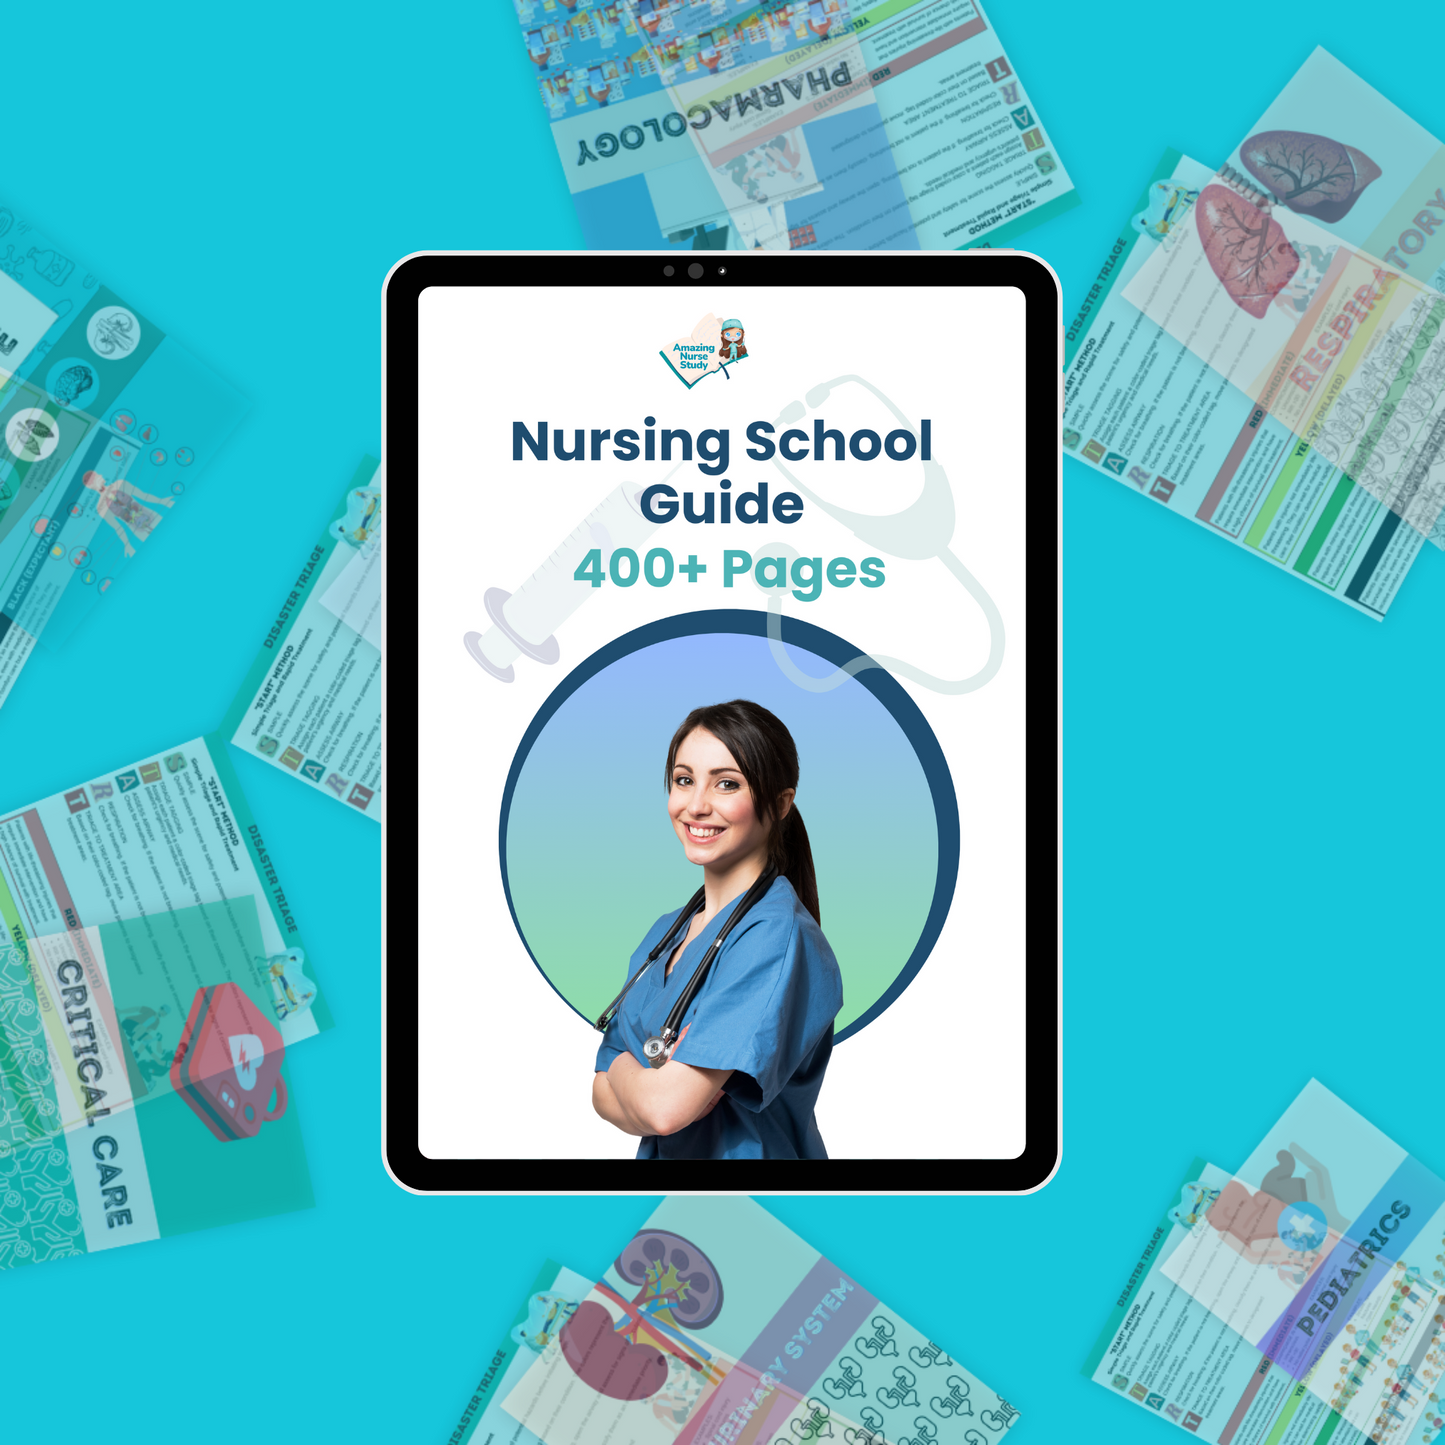 Complete Nursing School Bundle® – Nursing School Guide: Elevate